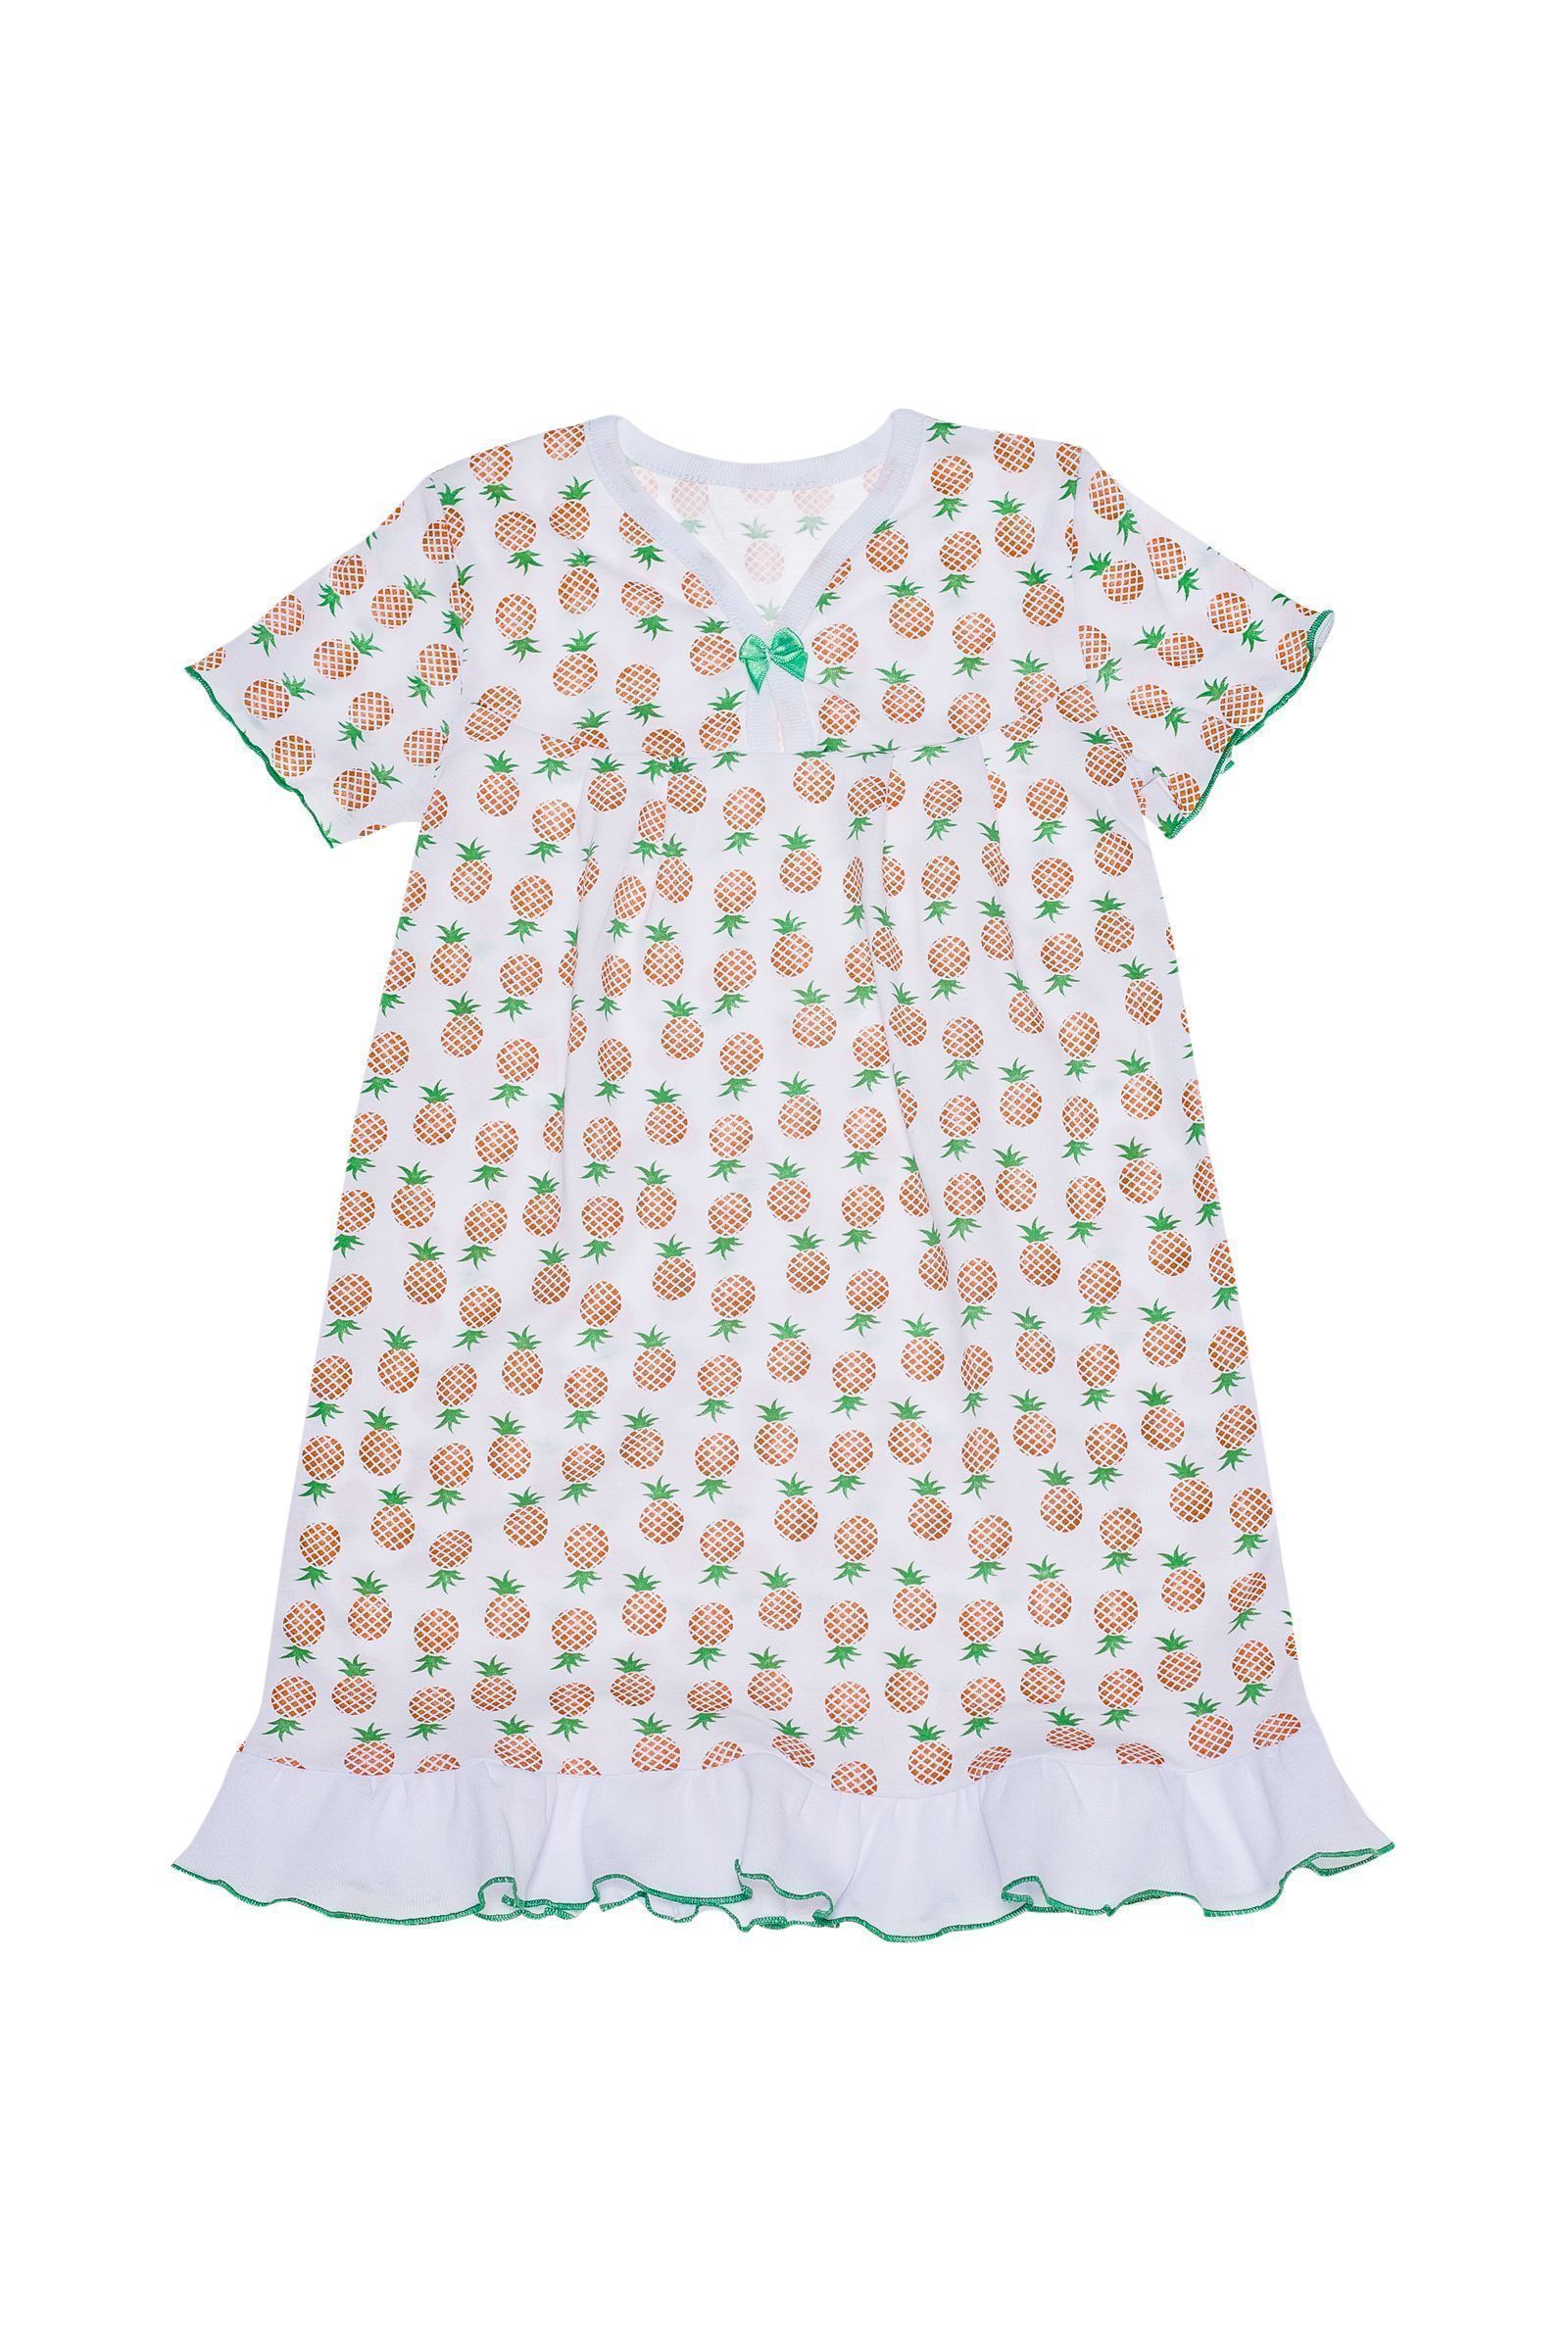 Ночная сорочка-СР02-2436 оптом от производителя детской одежды 'Алёна'